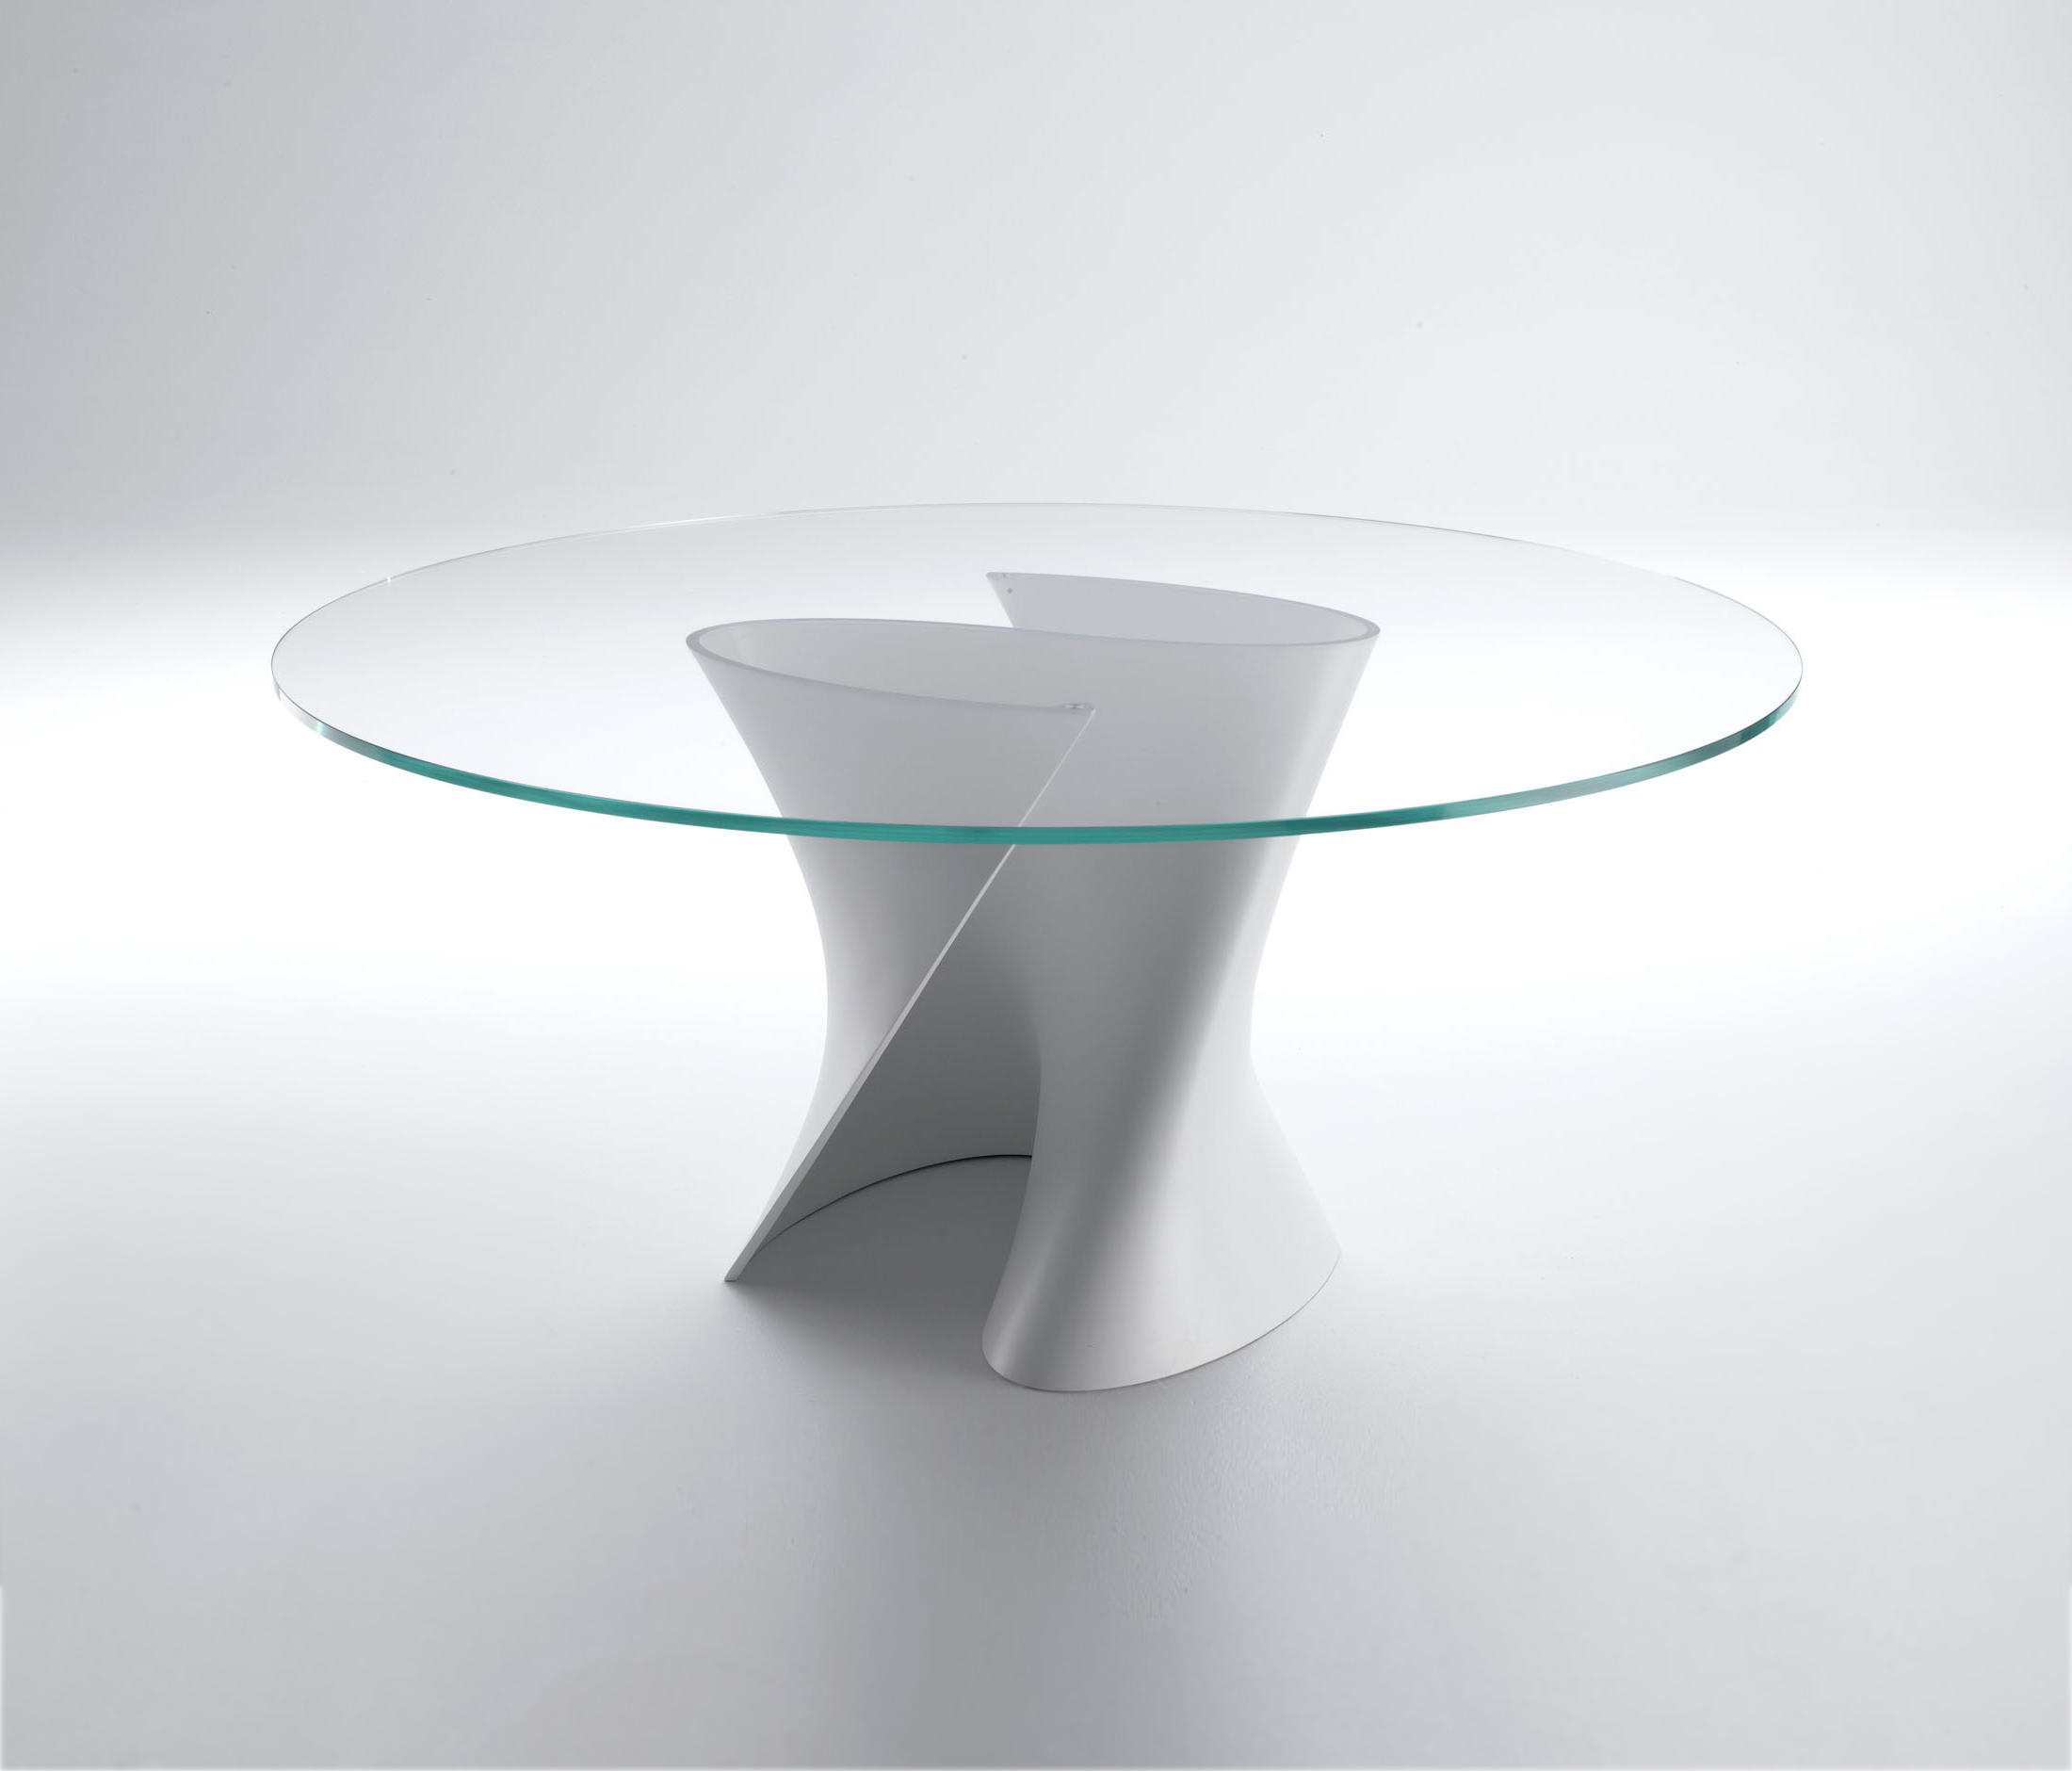 Столик мдф. Deninsofas s.Table 700 стол стеклянный. Стол круглый дизайнерский. Столик круглый. Столик стеклянный круглый.